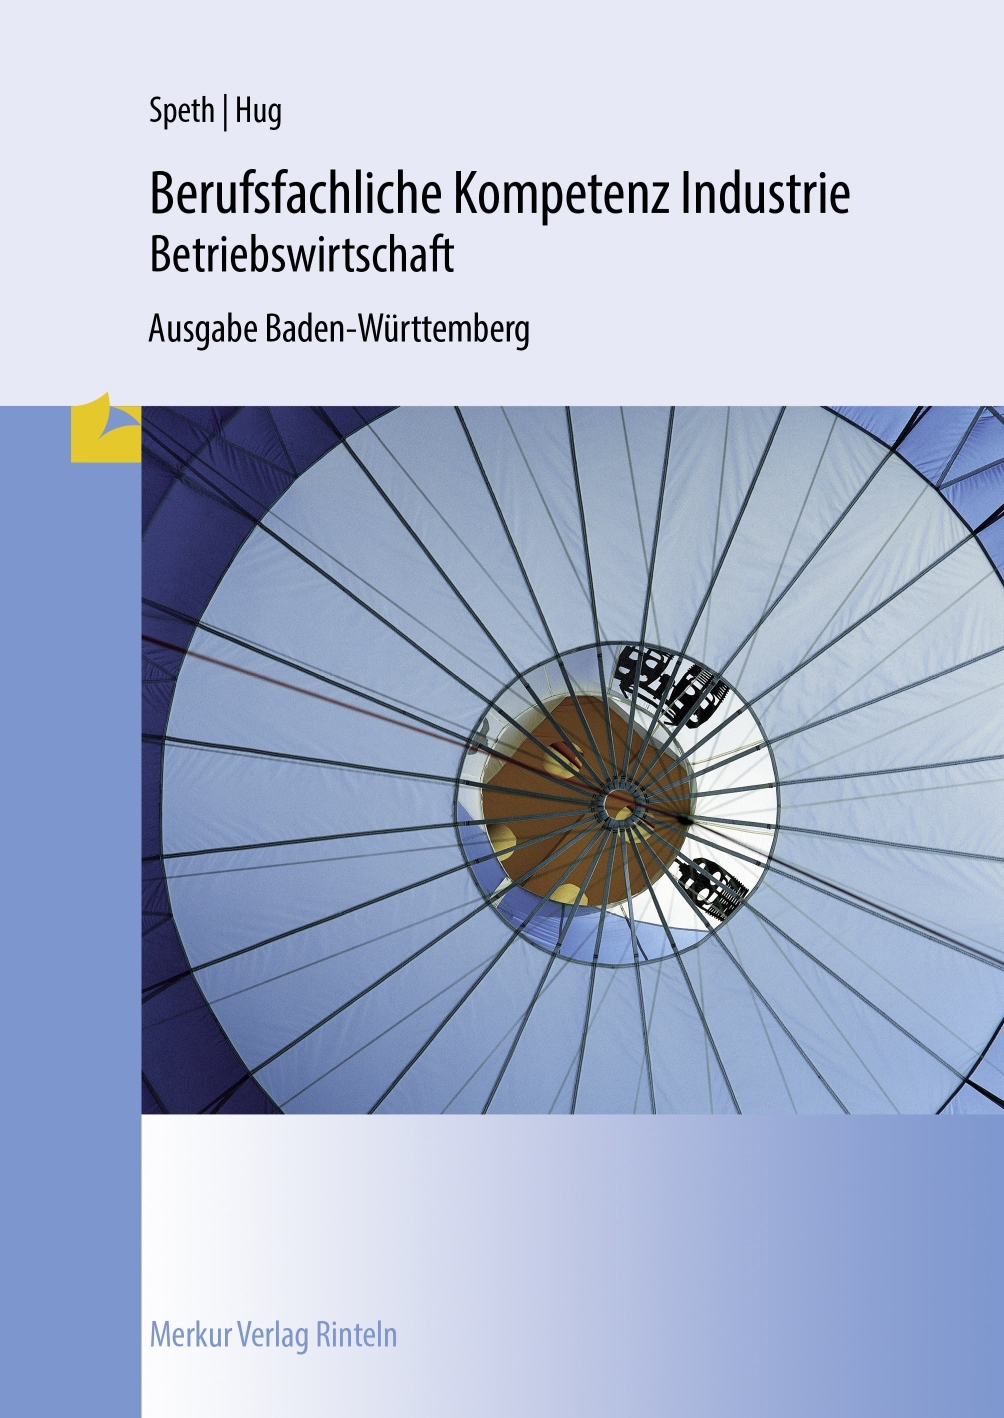 Berufsfachliche Kompetenz Industrie - Betriebswirtschaft Ausgabe Baden-Württemberg